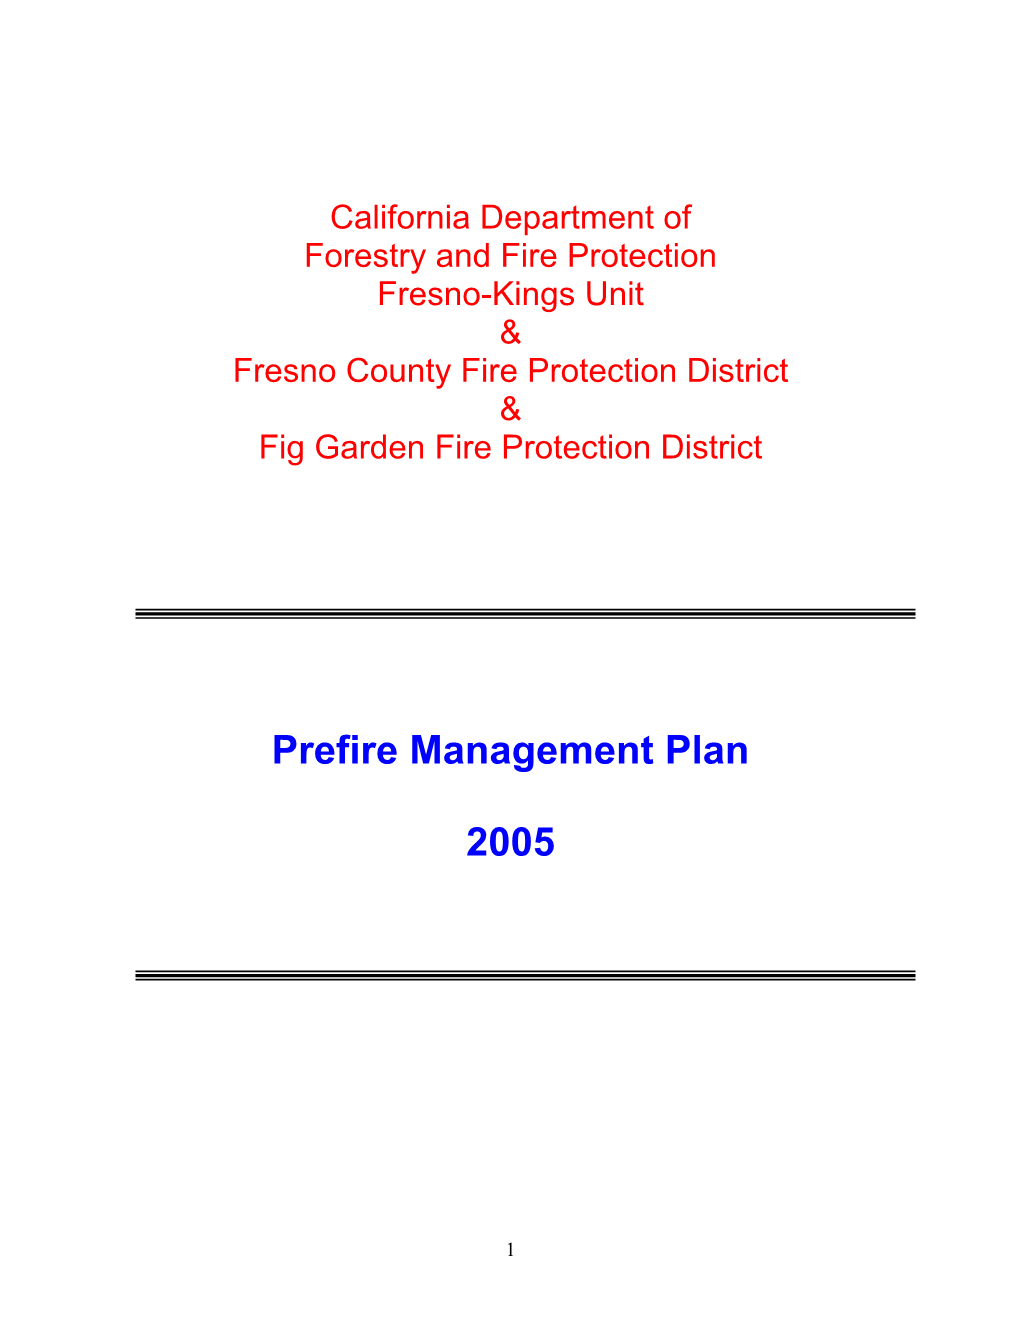 Prefire Management Plan 2005